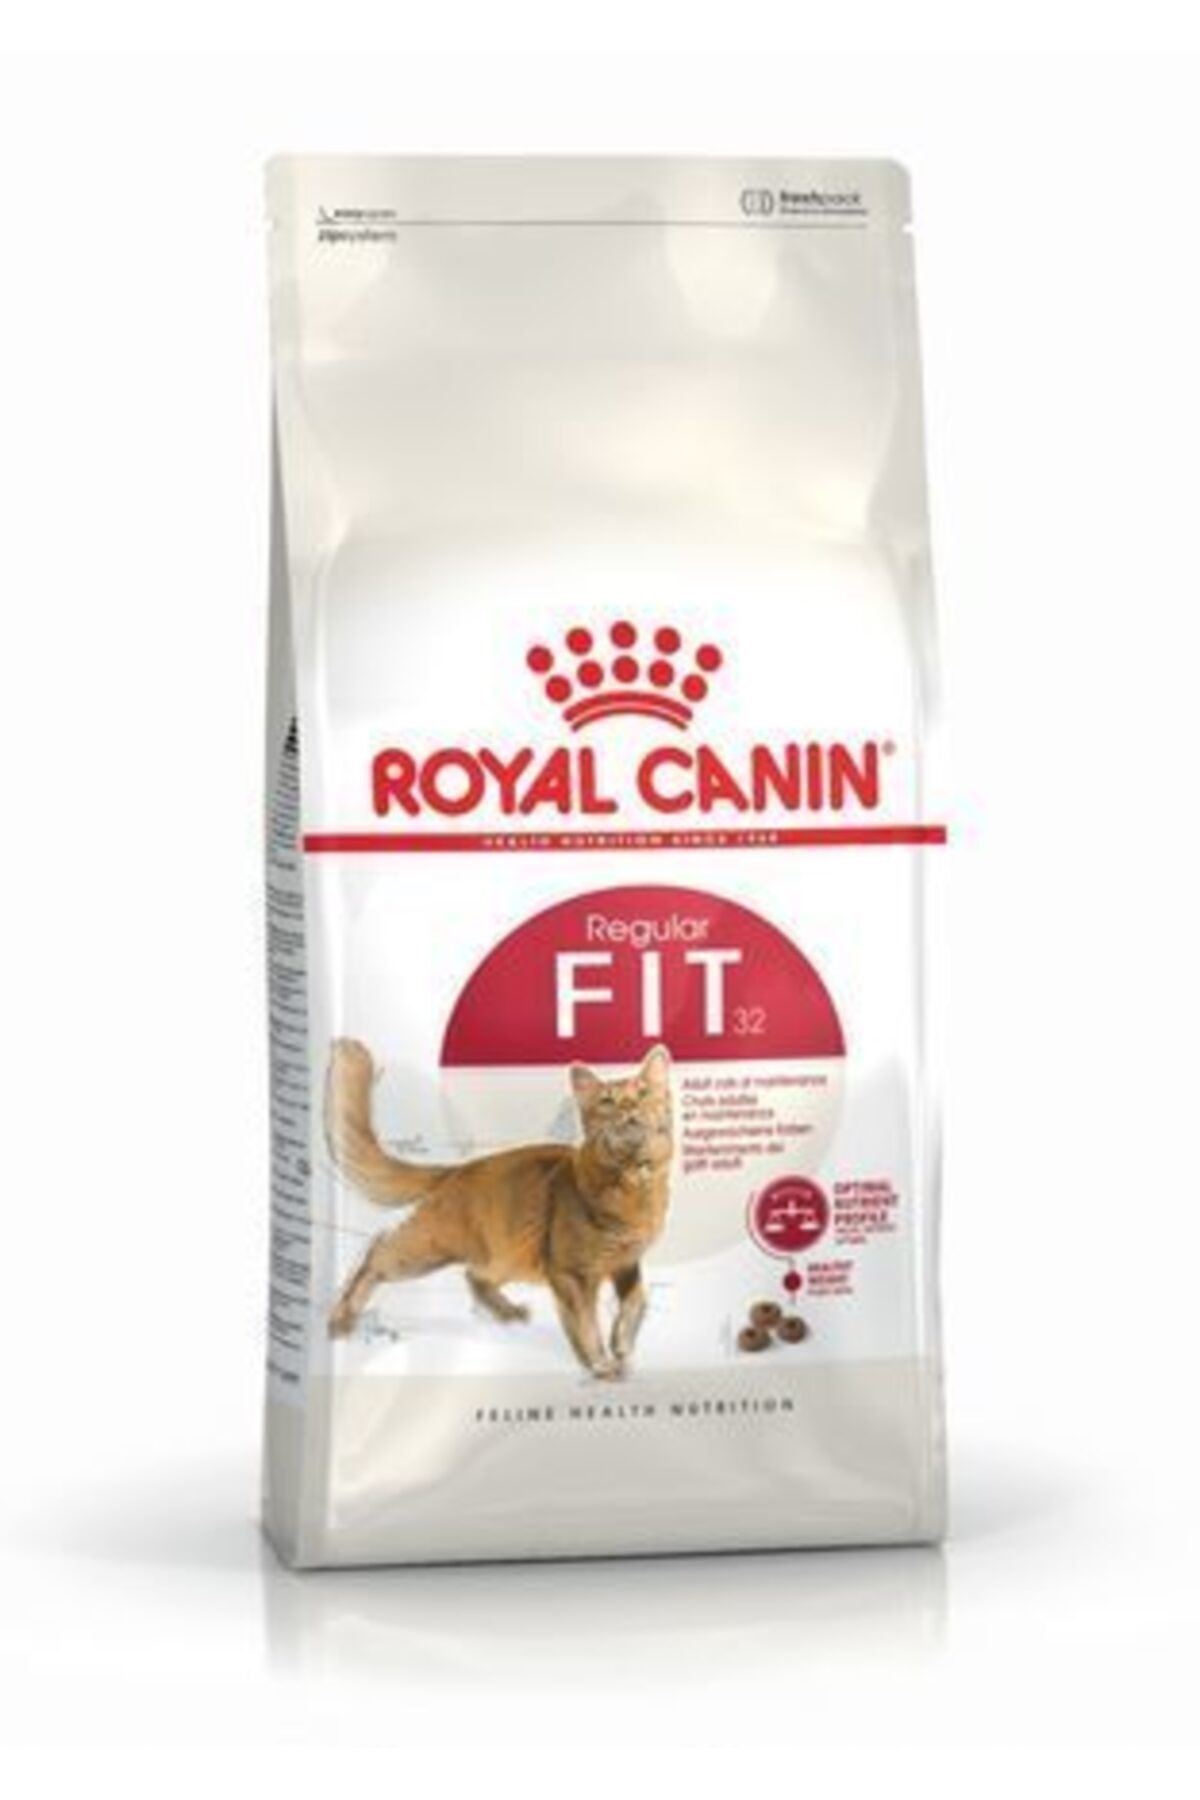 Royal Canin Fit 32 Kedi Kuru Maması 4 kg